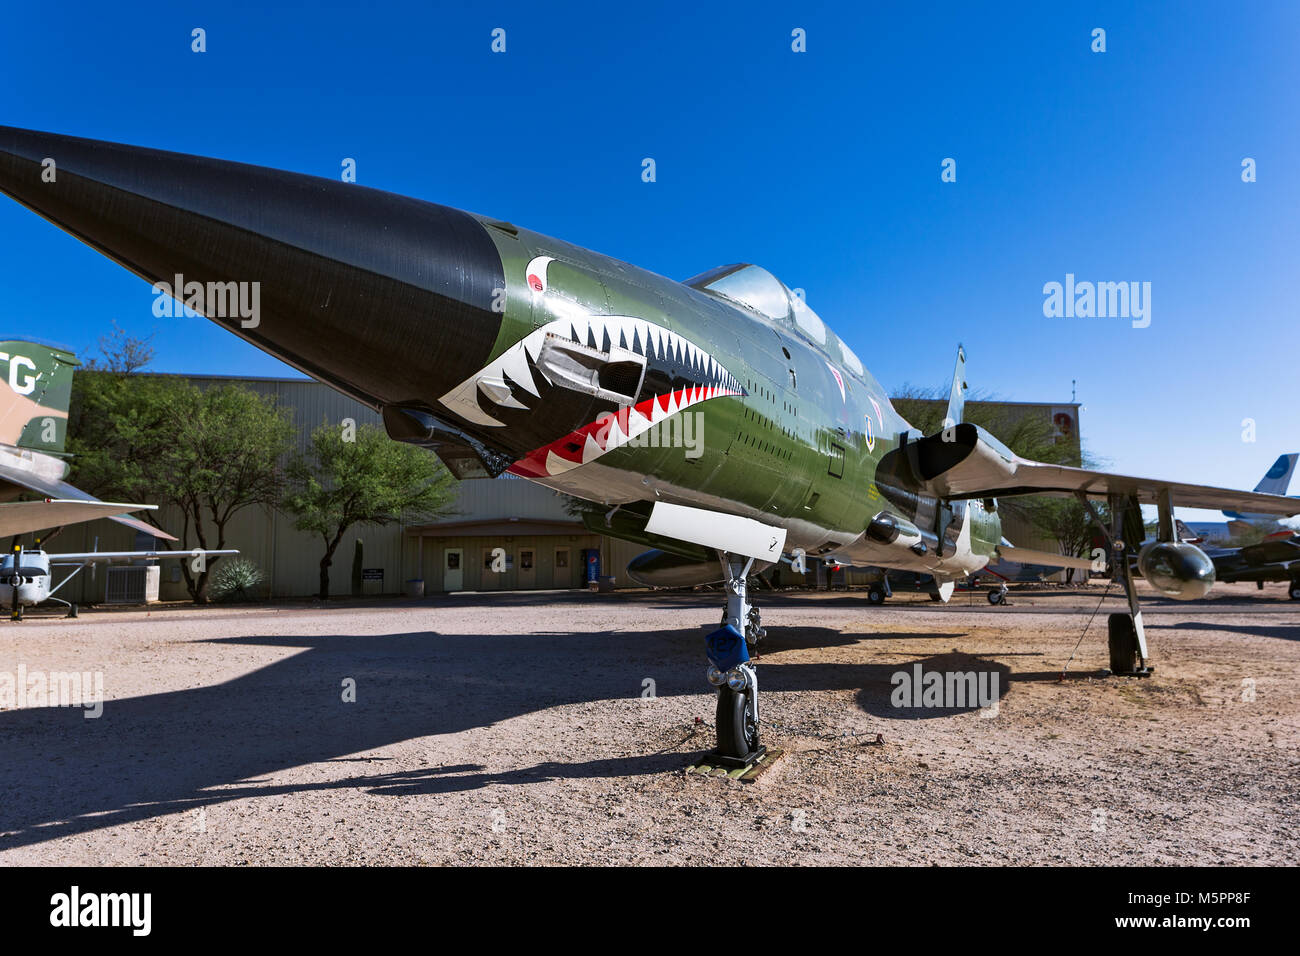 Avion de chasse exposé au musée de l'air et de l'espace de Pima, Tucson, Arizona Banque D'Images